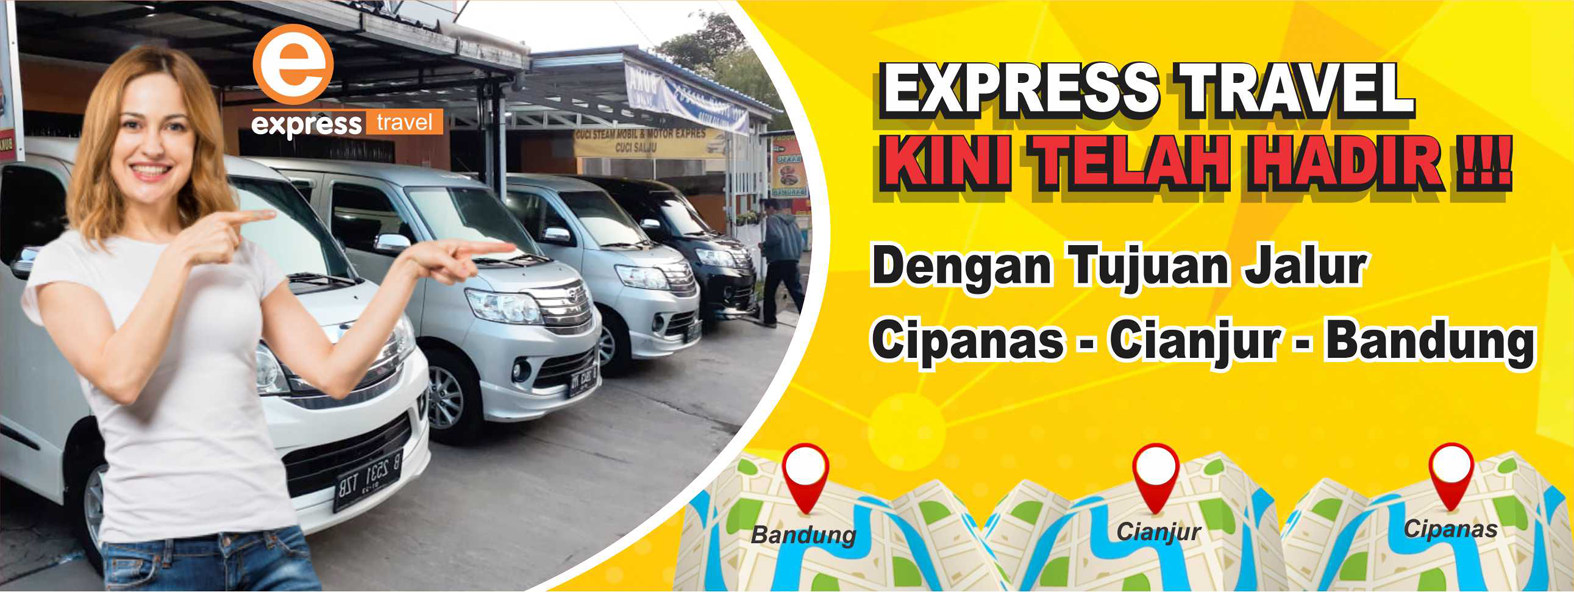 travel express cianjur